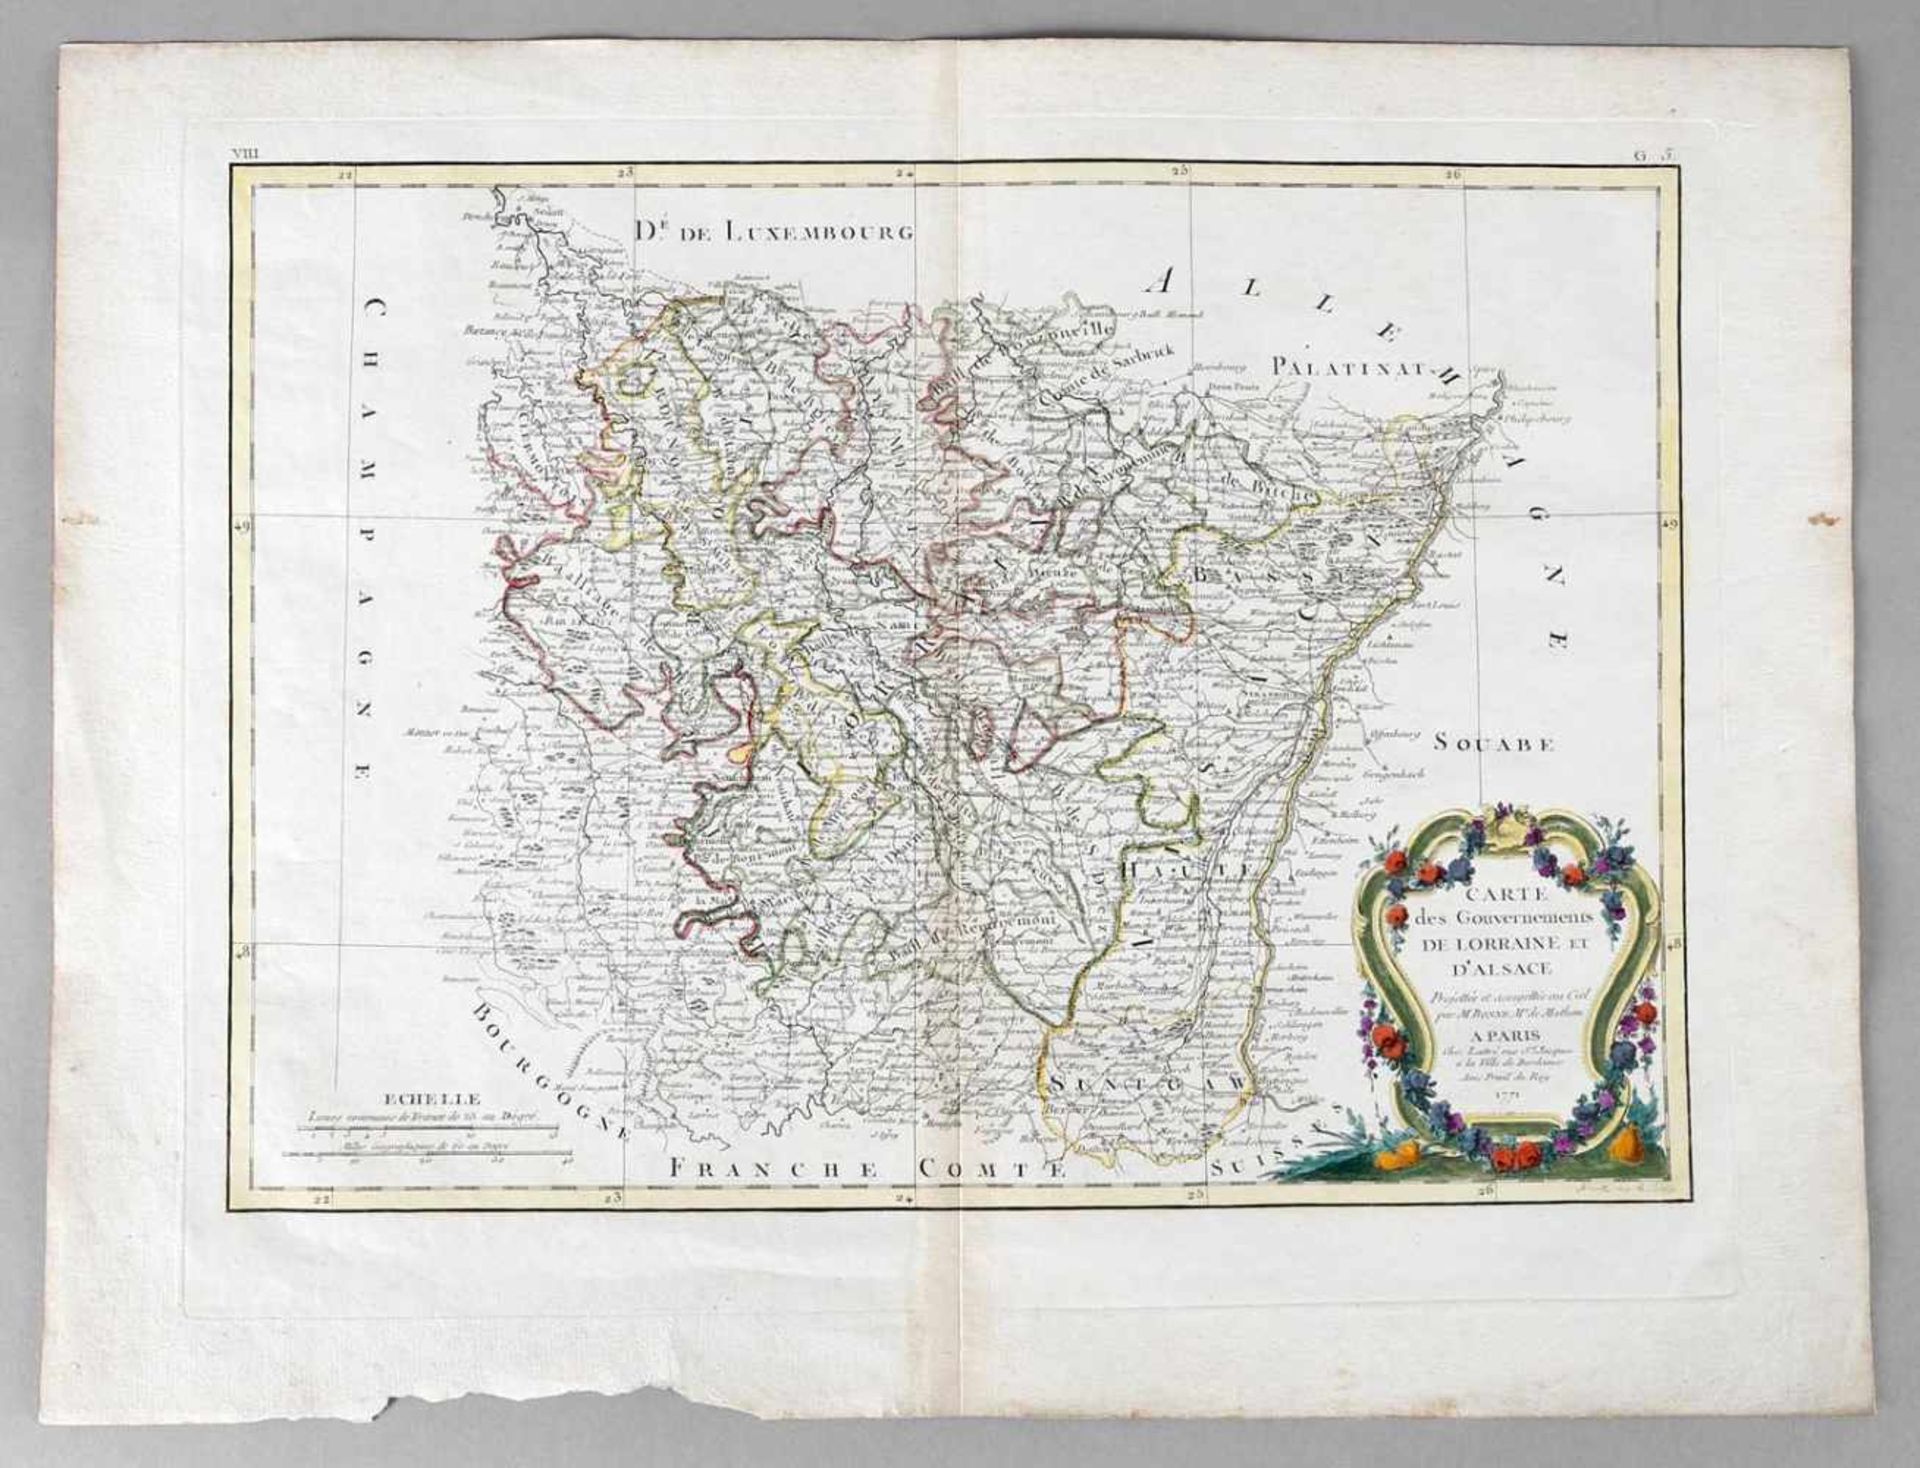 Carte des Gouvernements de Lorraine et d'Alsace (Karte der Gouvernements Lothringen und Elsass)